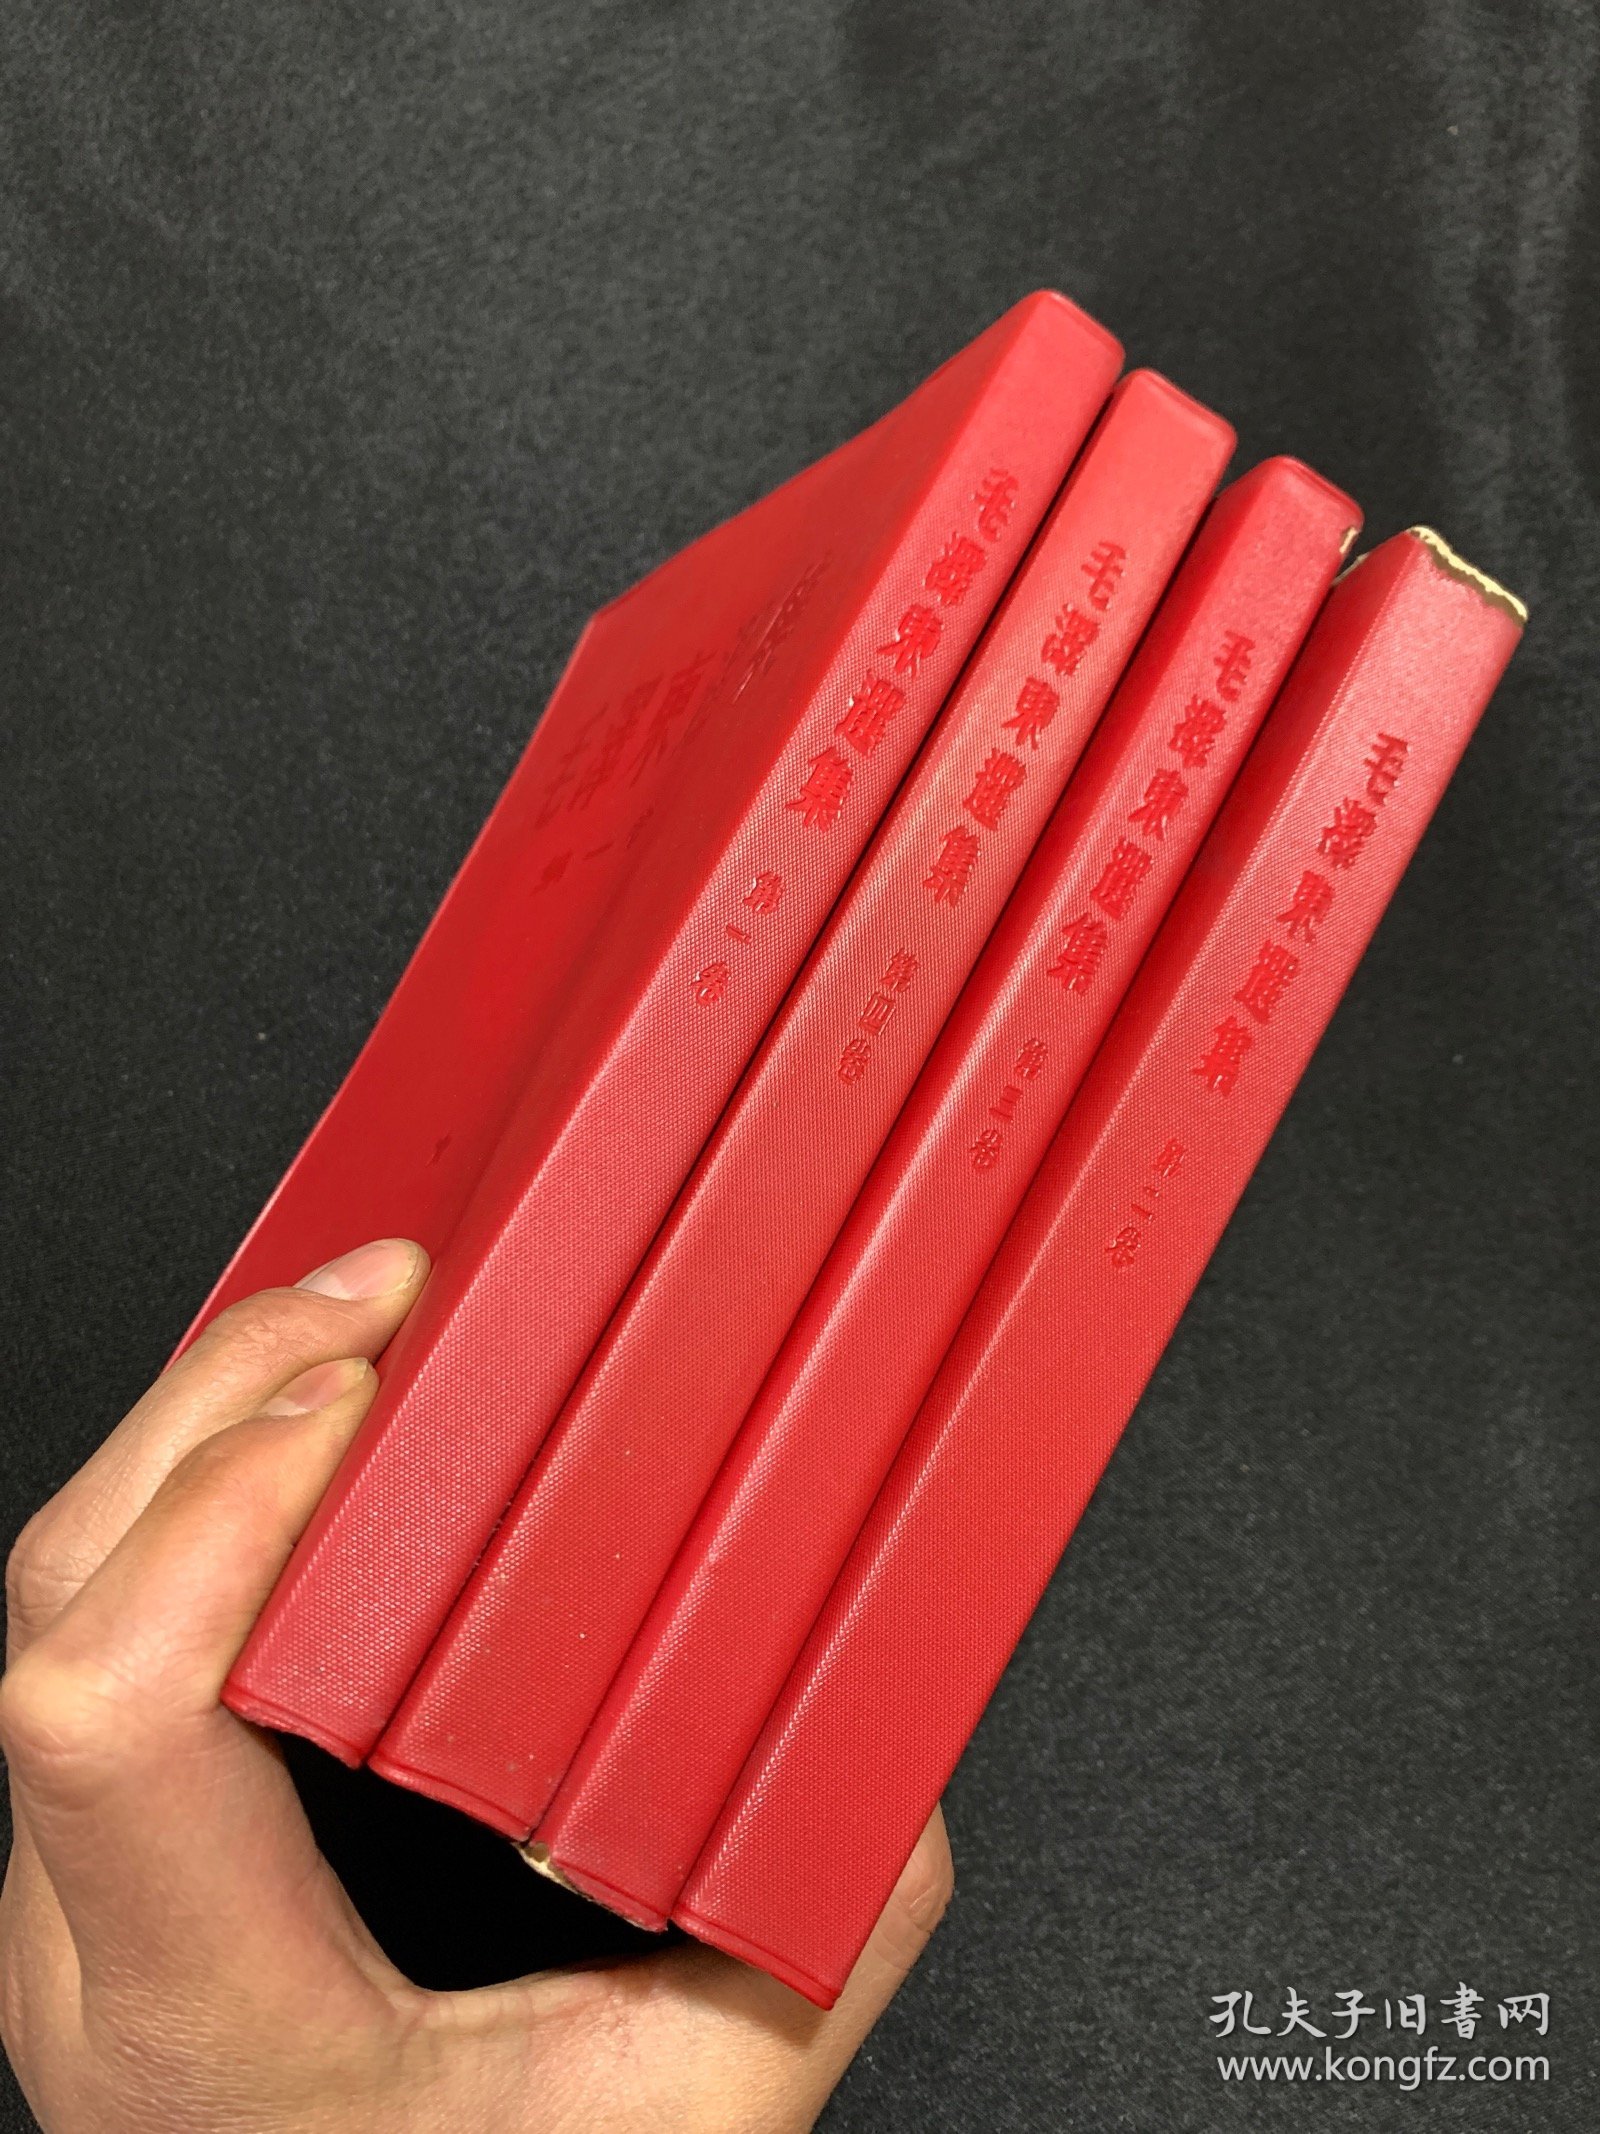 毛泽东选集第1-4卷 大32开 竖版繁体字 红色塑料软精装